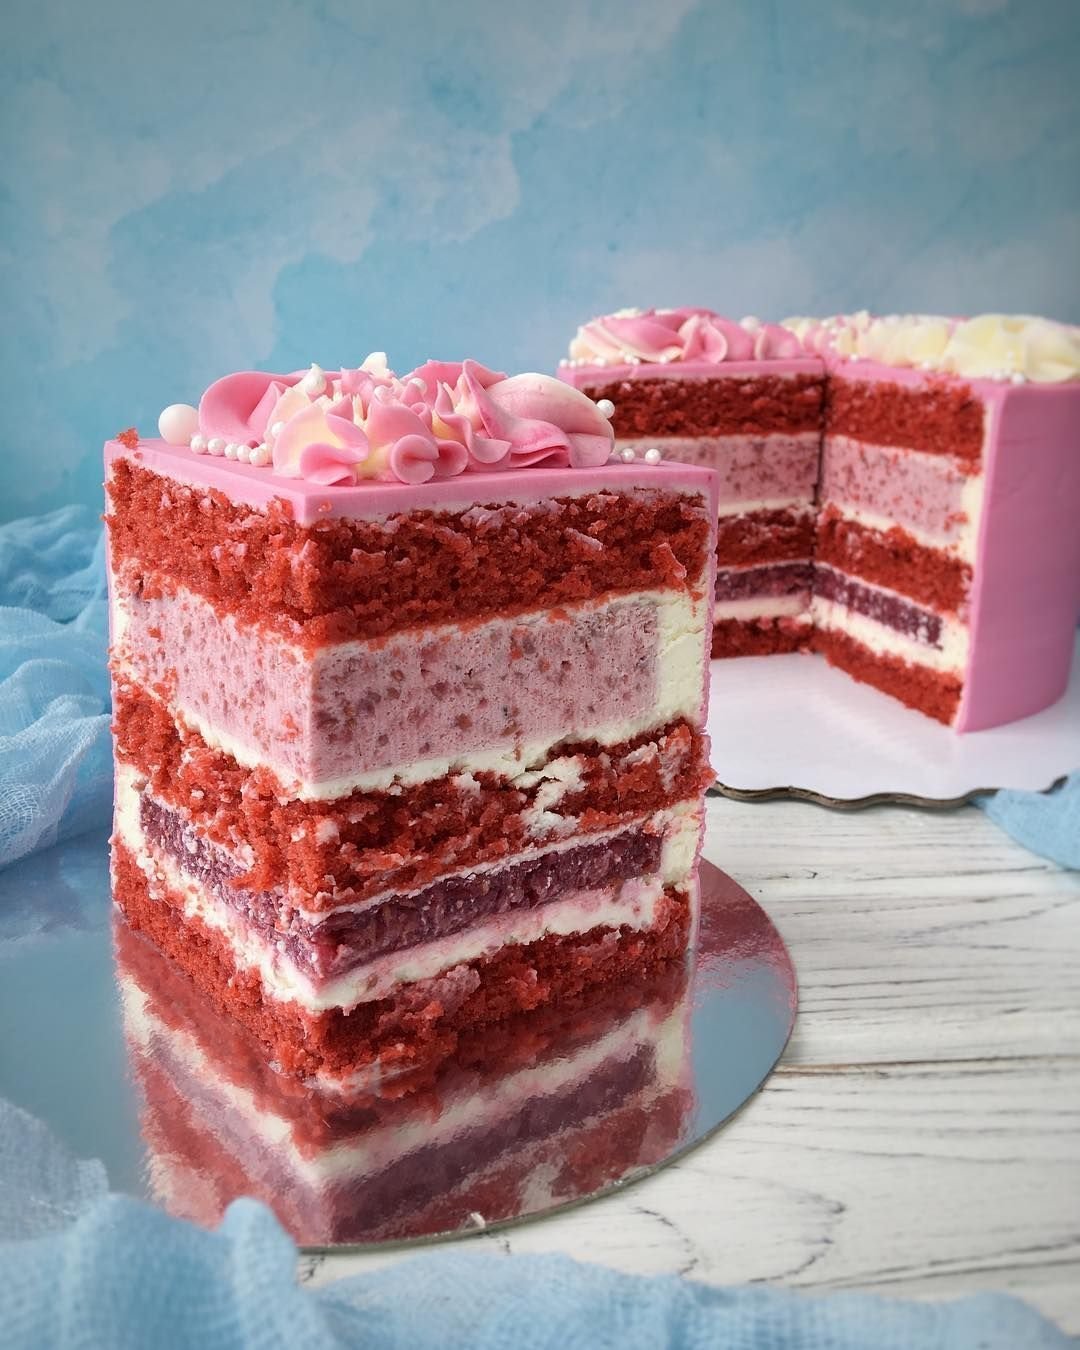 Начинки торта фото. Красный бархат с малиновым конфи. Красный бархат с кремом чиз. Торт красный бархат Гулливер. Торт красный бархат с малиновым конфи.